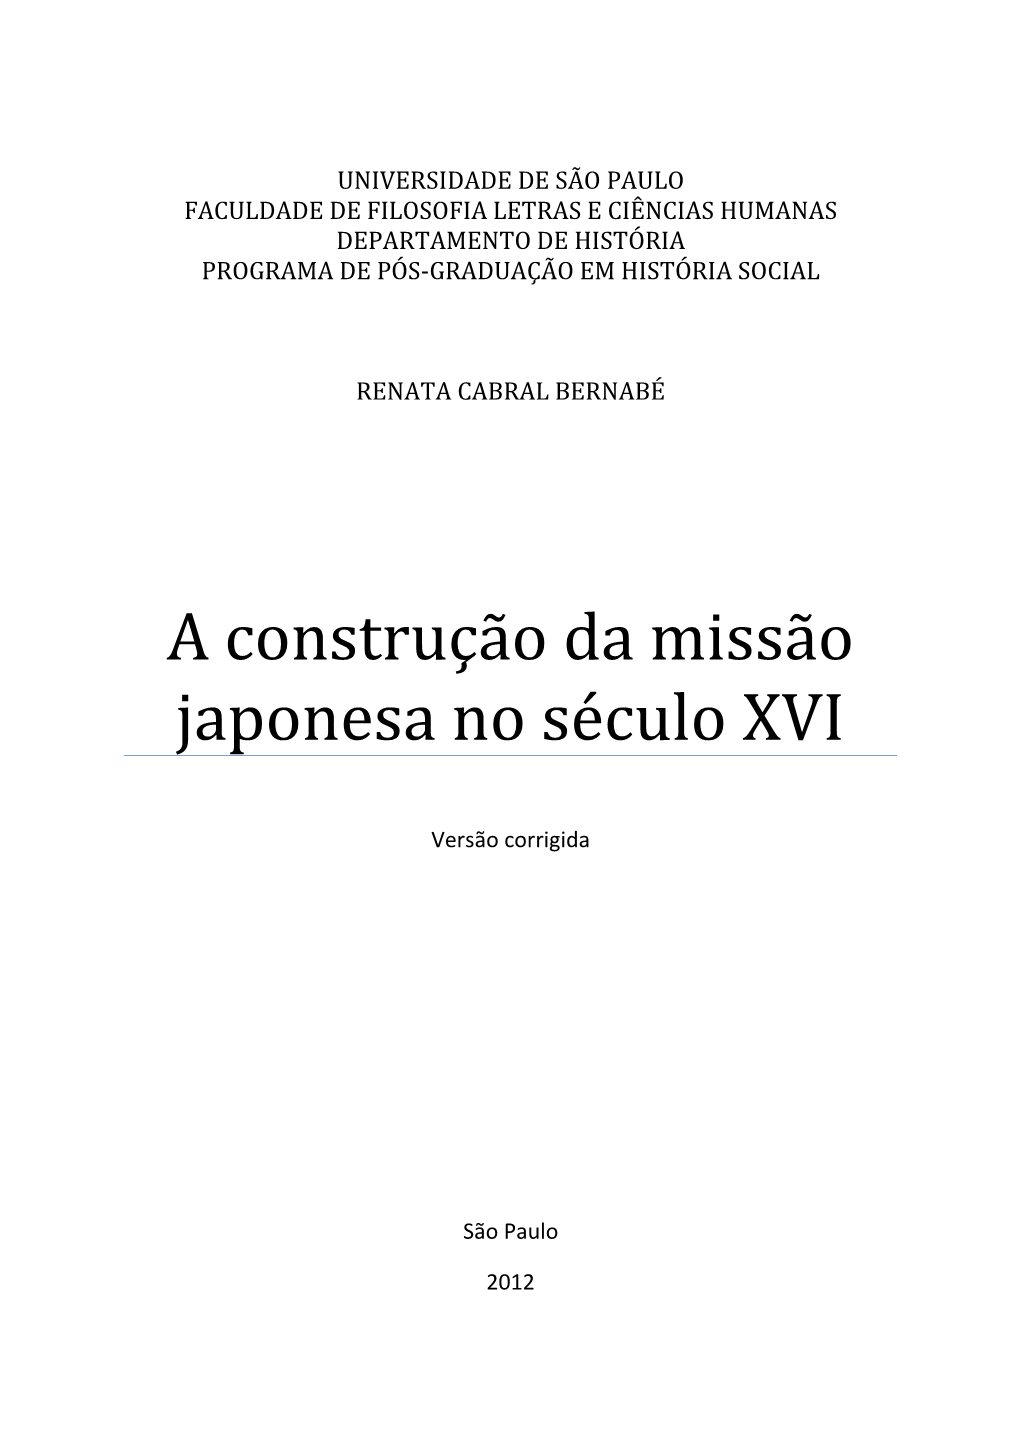 A Construção Da Missão Japonesa No Século XVI